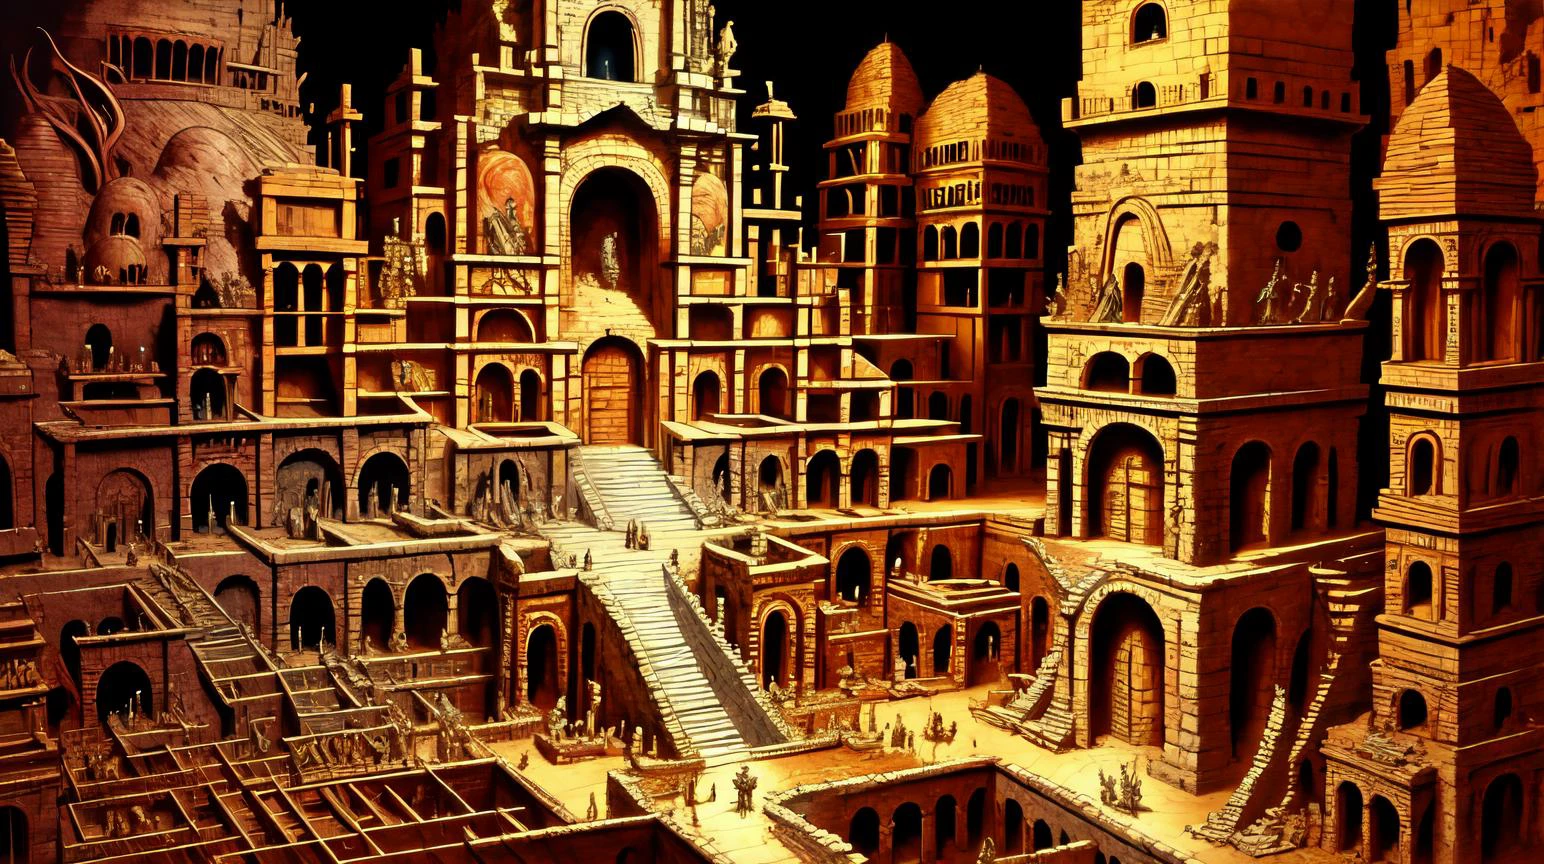 (Parchemins de bibliothèques de catacombes de gnomes souterrains:0.5) (Ruines civilisations anciennes ruines statues reliques:0.5) complexe, détaillé, ((Couleur jaune pâle teintée):0.3), art conceptuel de chef-d&#39;œuvre